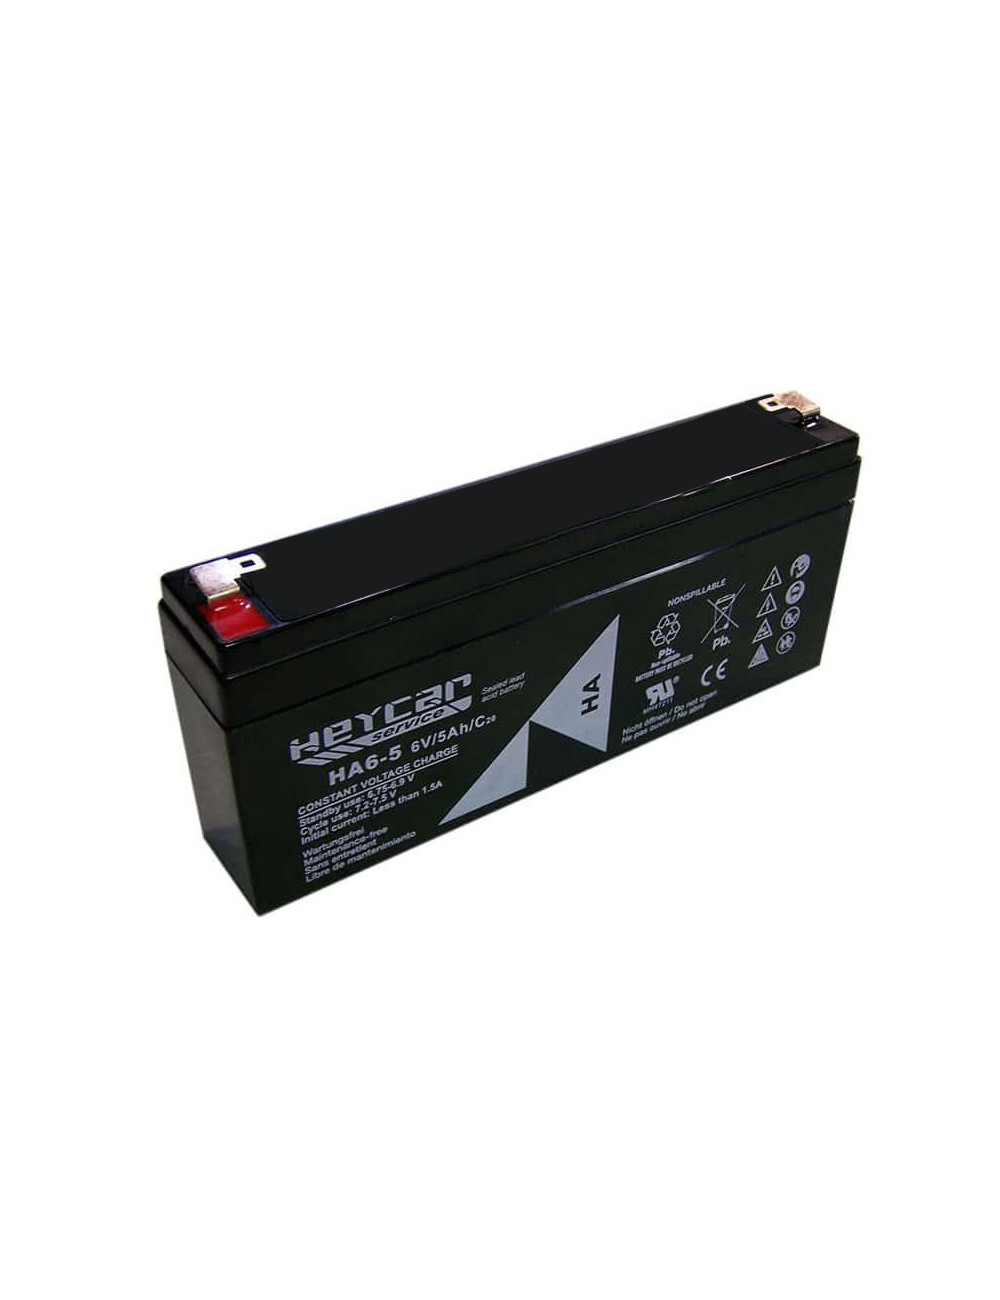 Bateria para escala ou balança Ohaus Defender 3000 com indicadores T31P e T32WX de 6V 5Ah C20 Heycar Service HA6-5 - 1